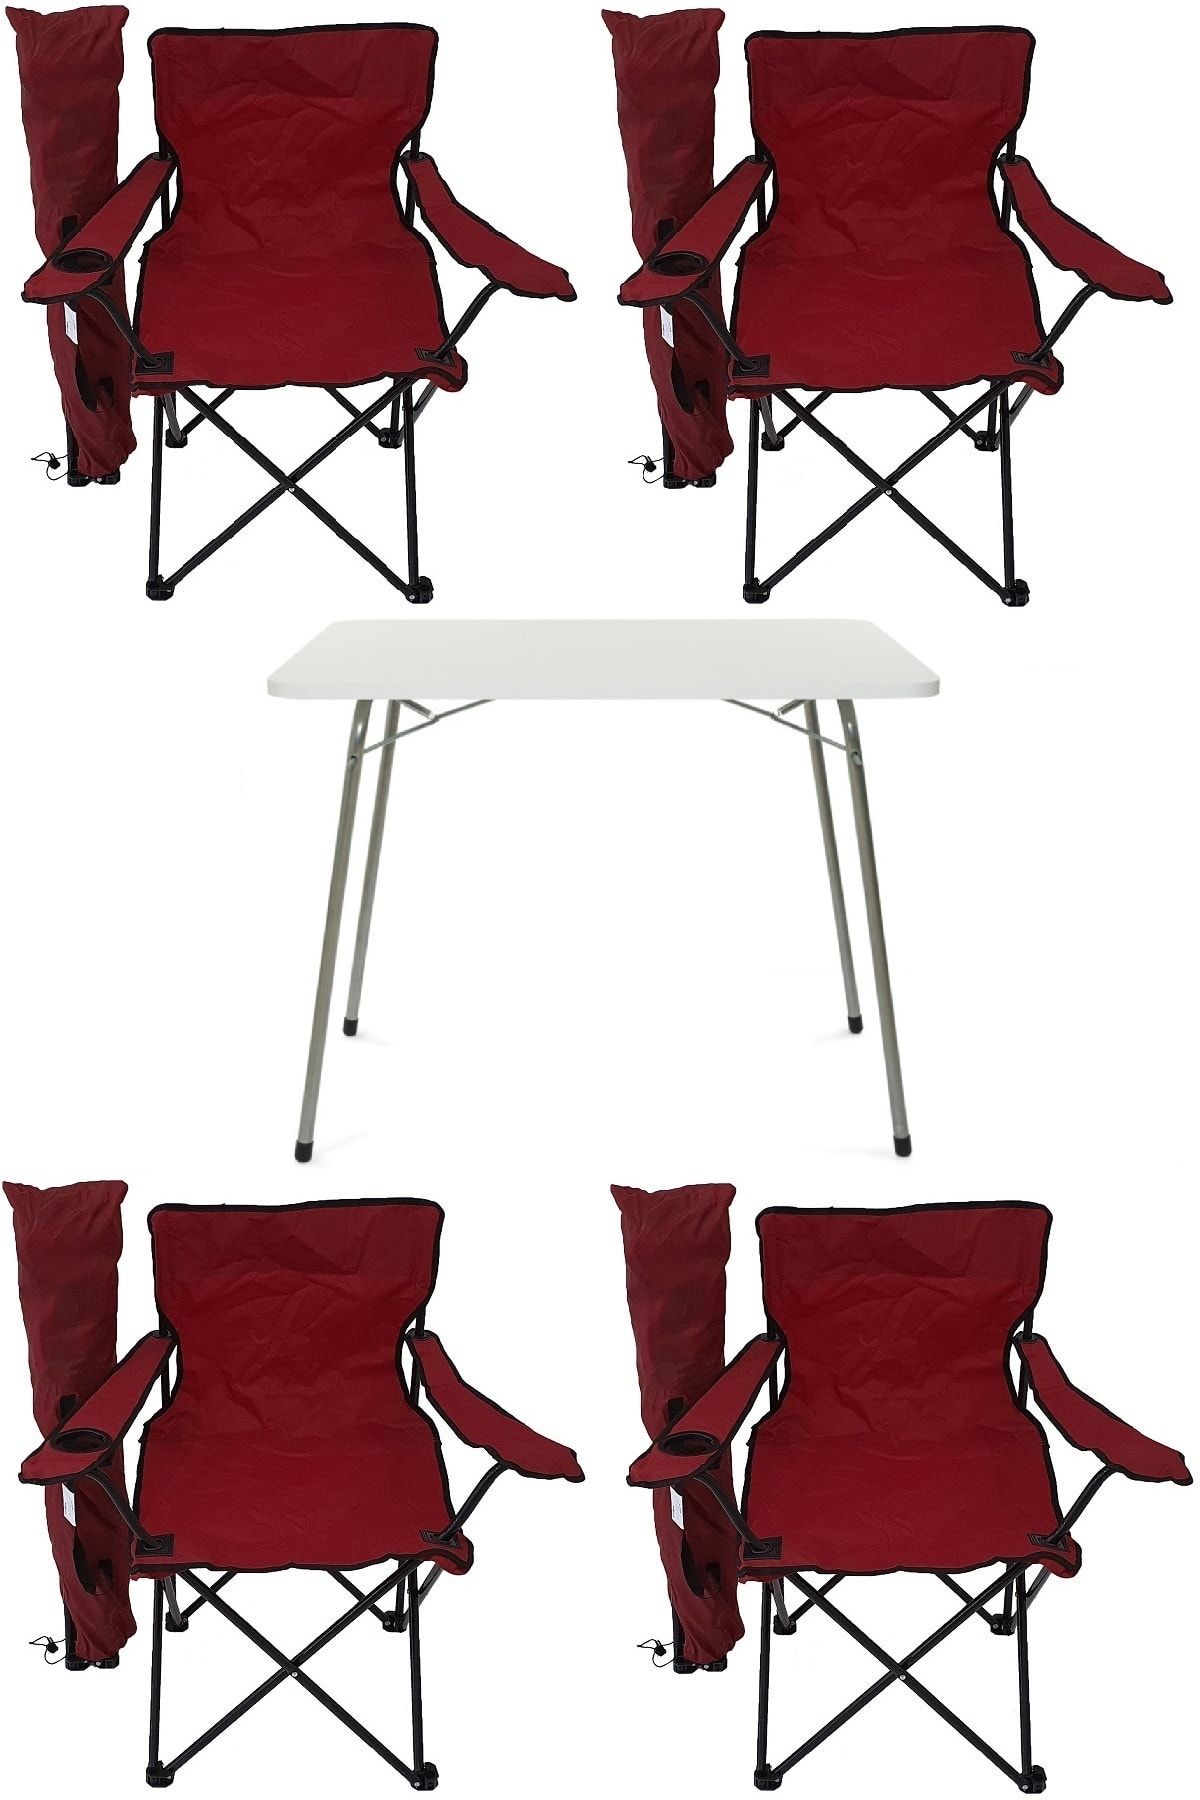 Bofigo Katlanır Masa + 4 Adet Kamp Sandalyesi  Kırmızı